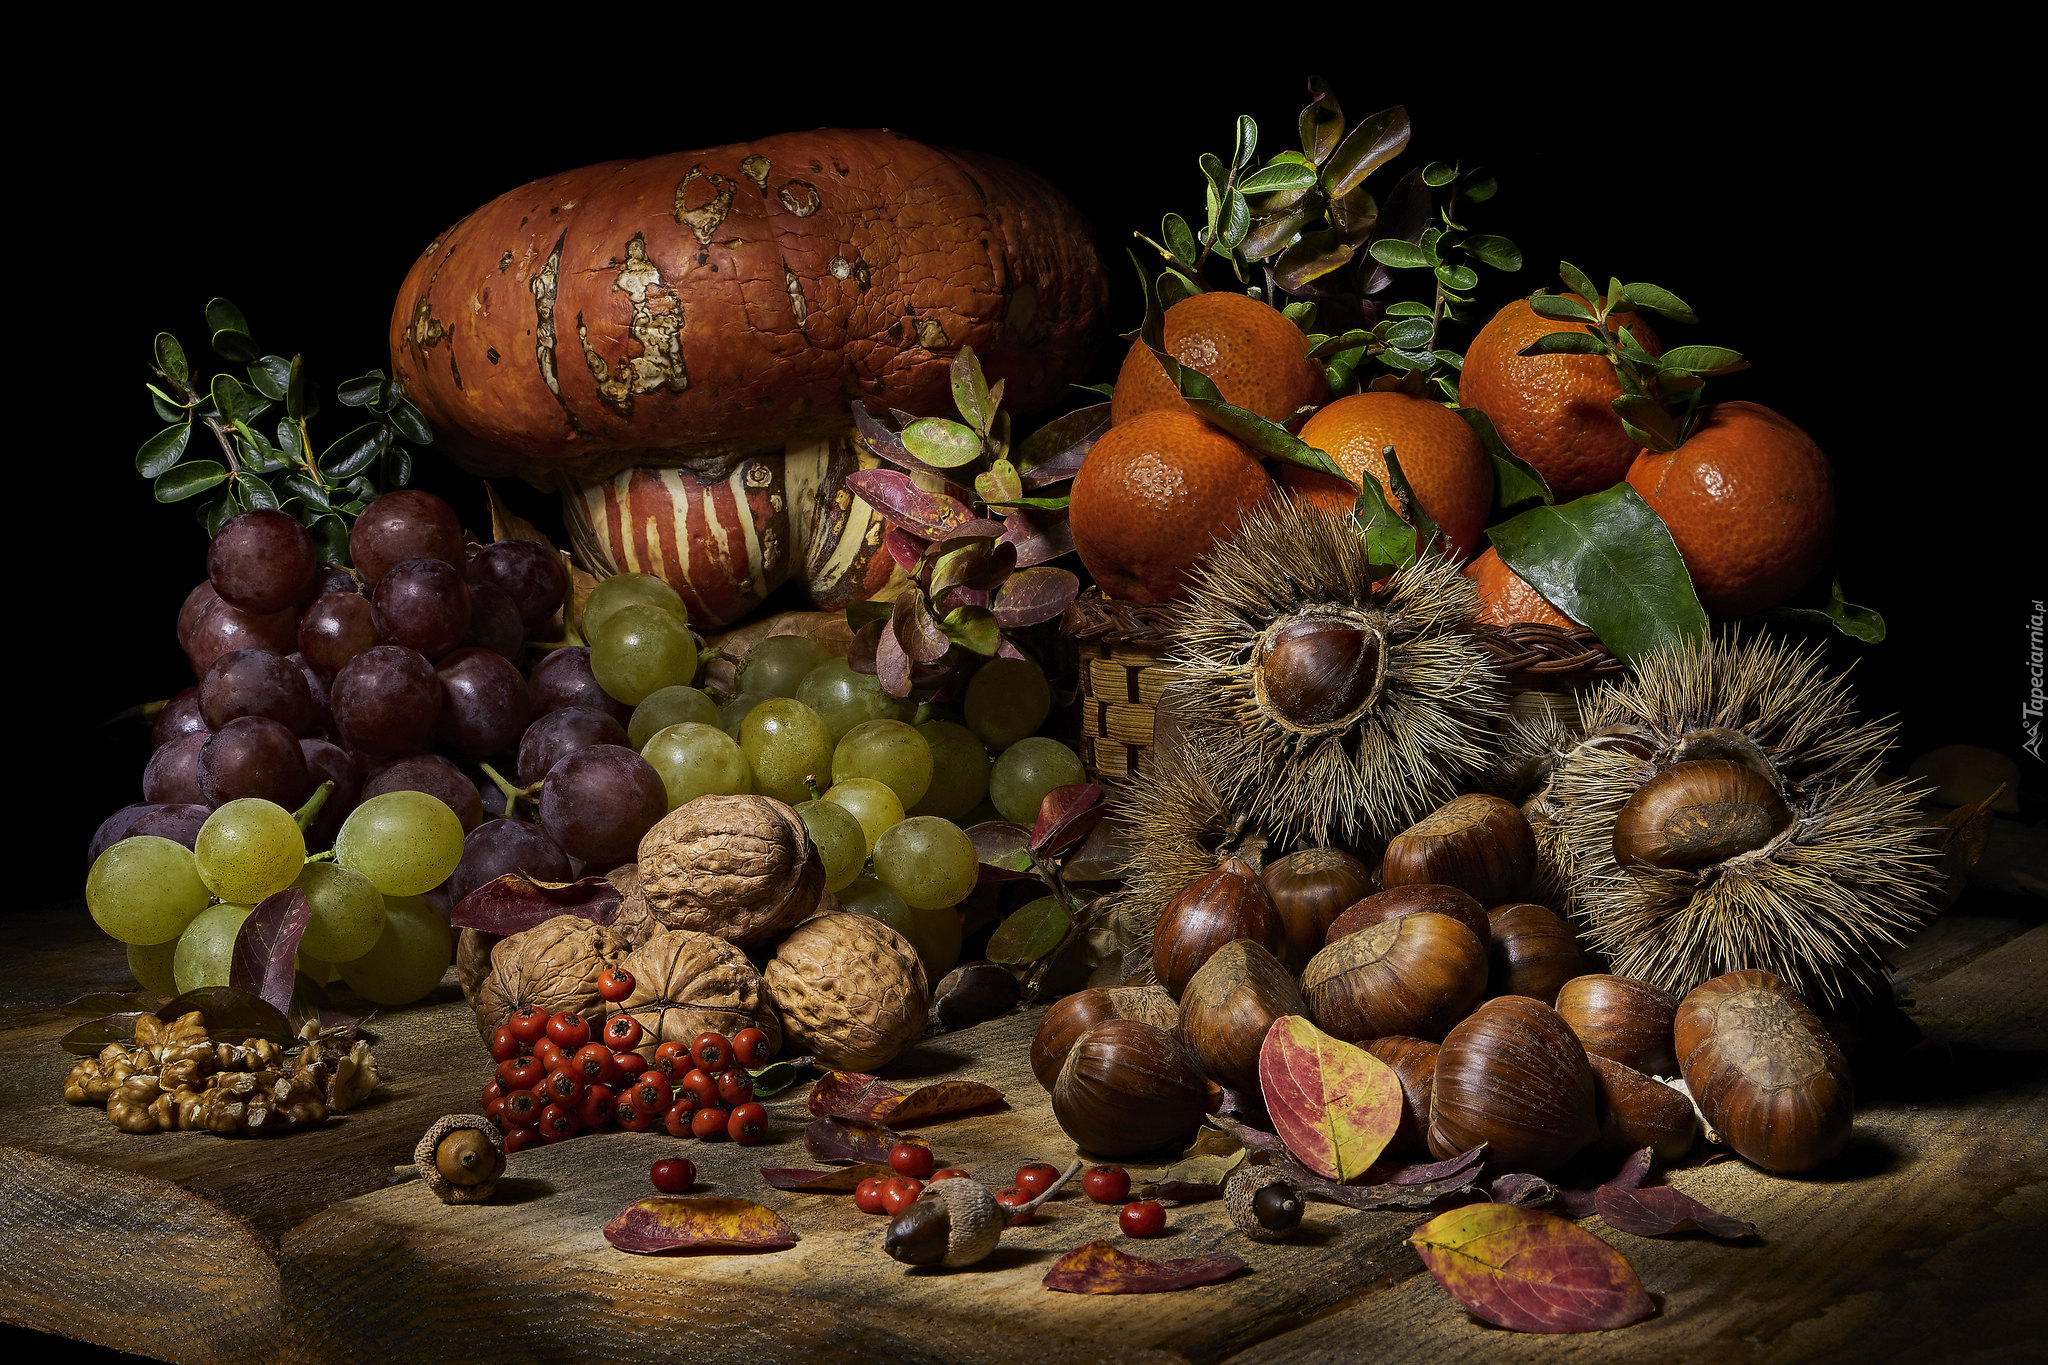 Owoce, Warzywa, Dynia, Kasztany jadalne, Orzechy, Winogrona, Mandarynki, Jarzębina, Liście, Kompozycja